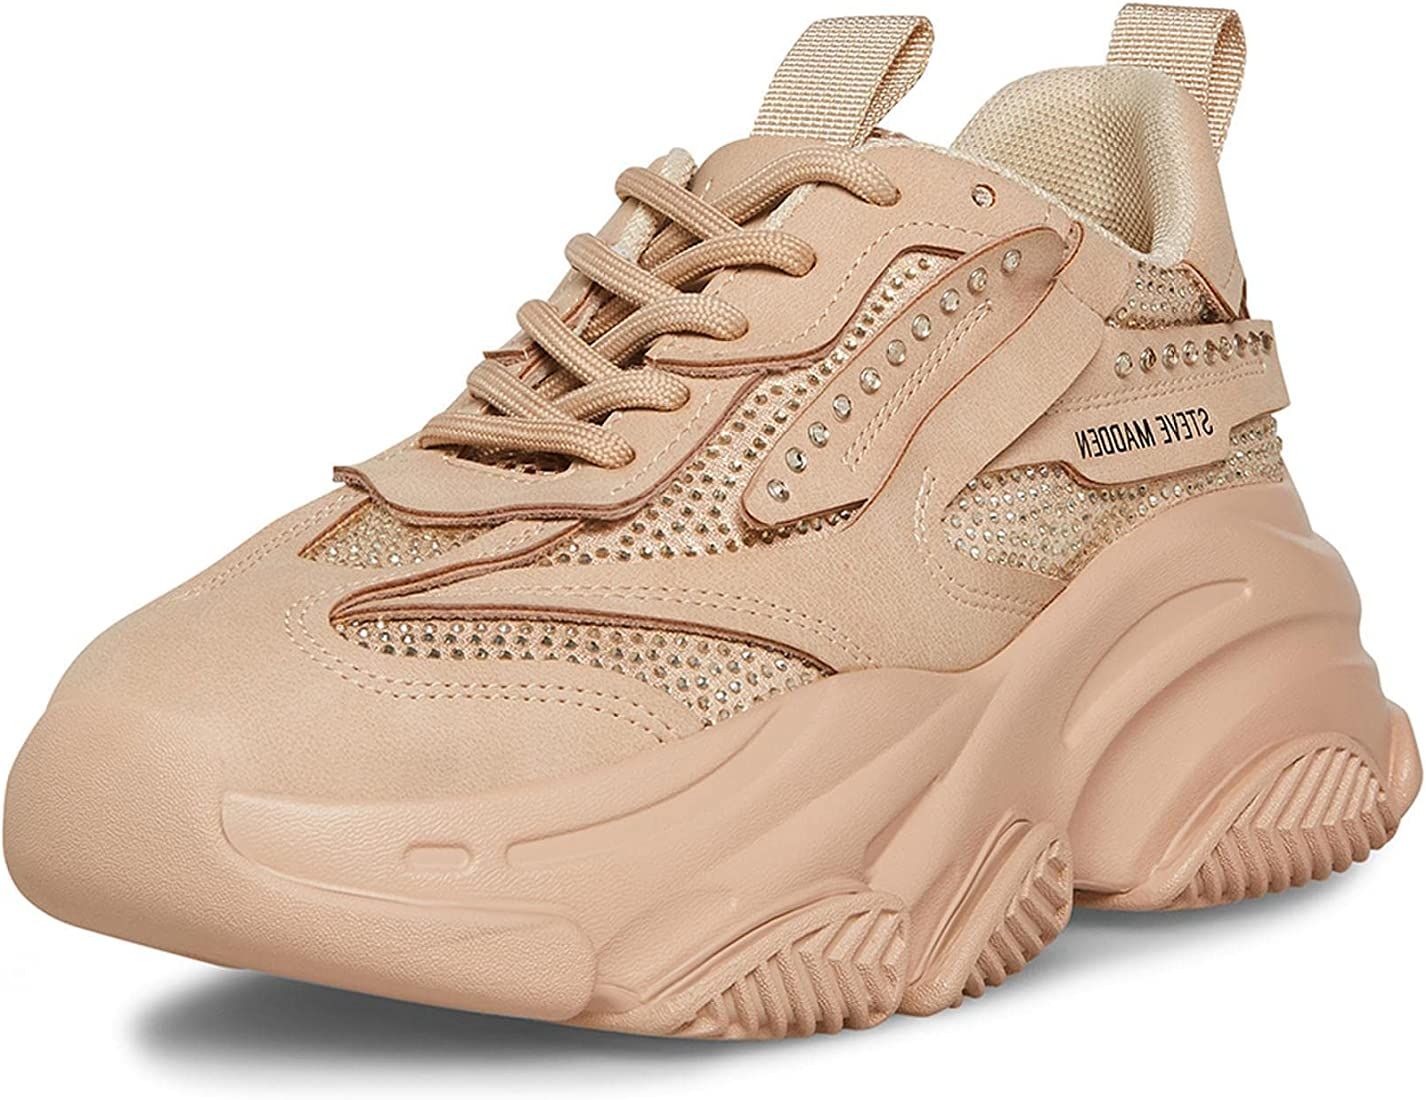 Steve Madden Women's Possession Sneaker | Amazon (US)